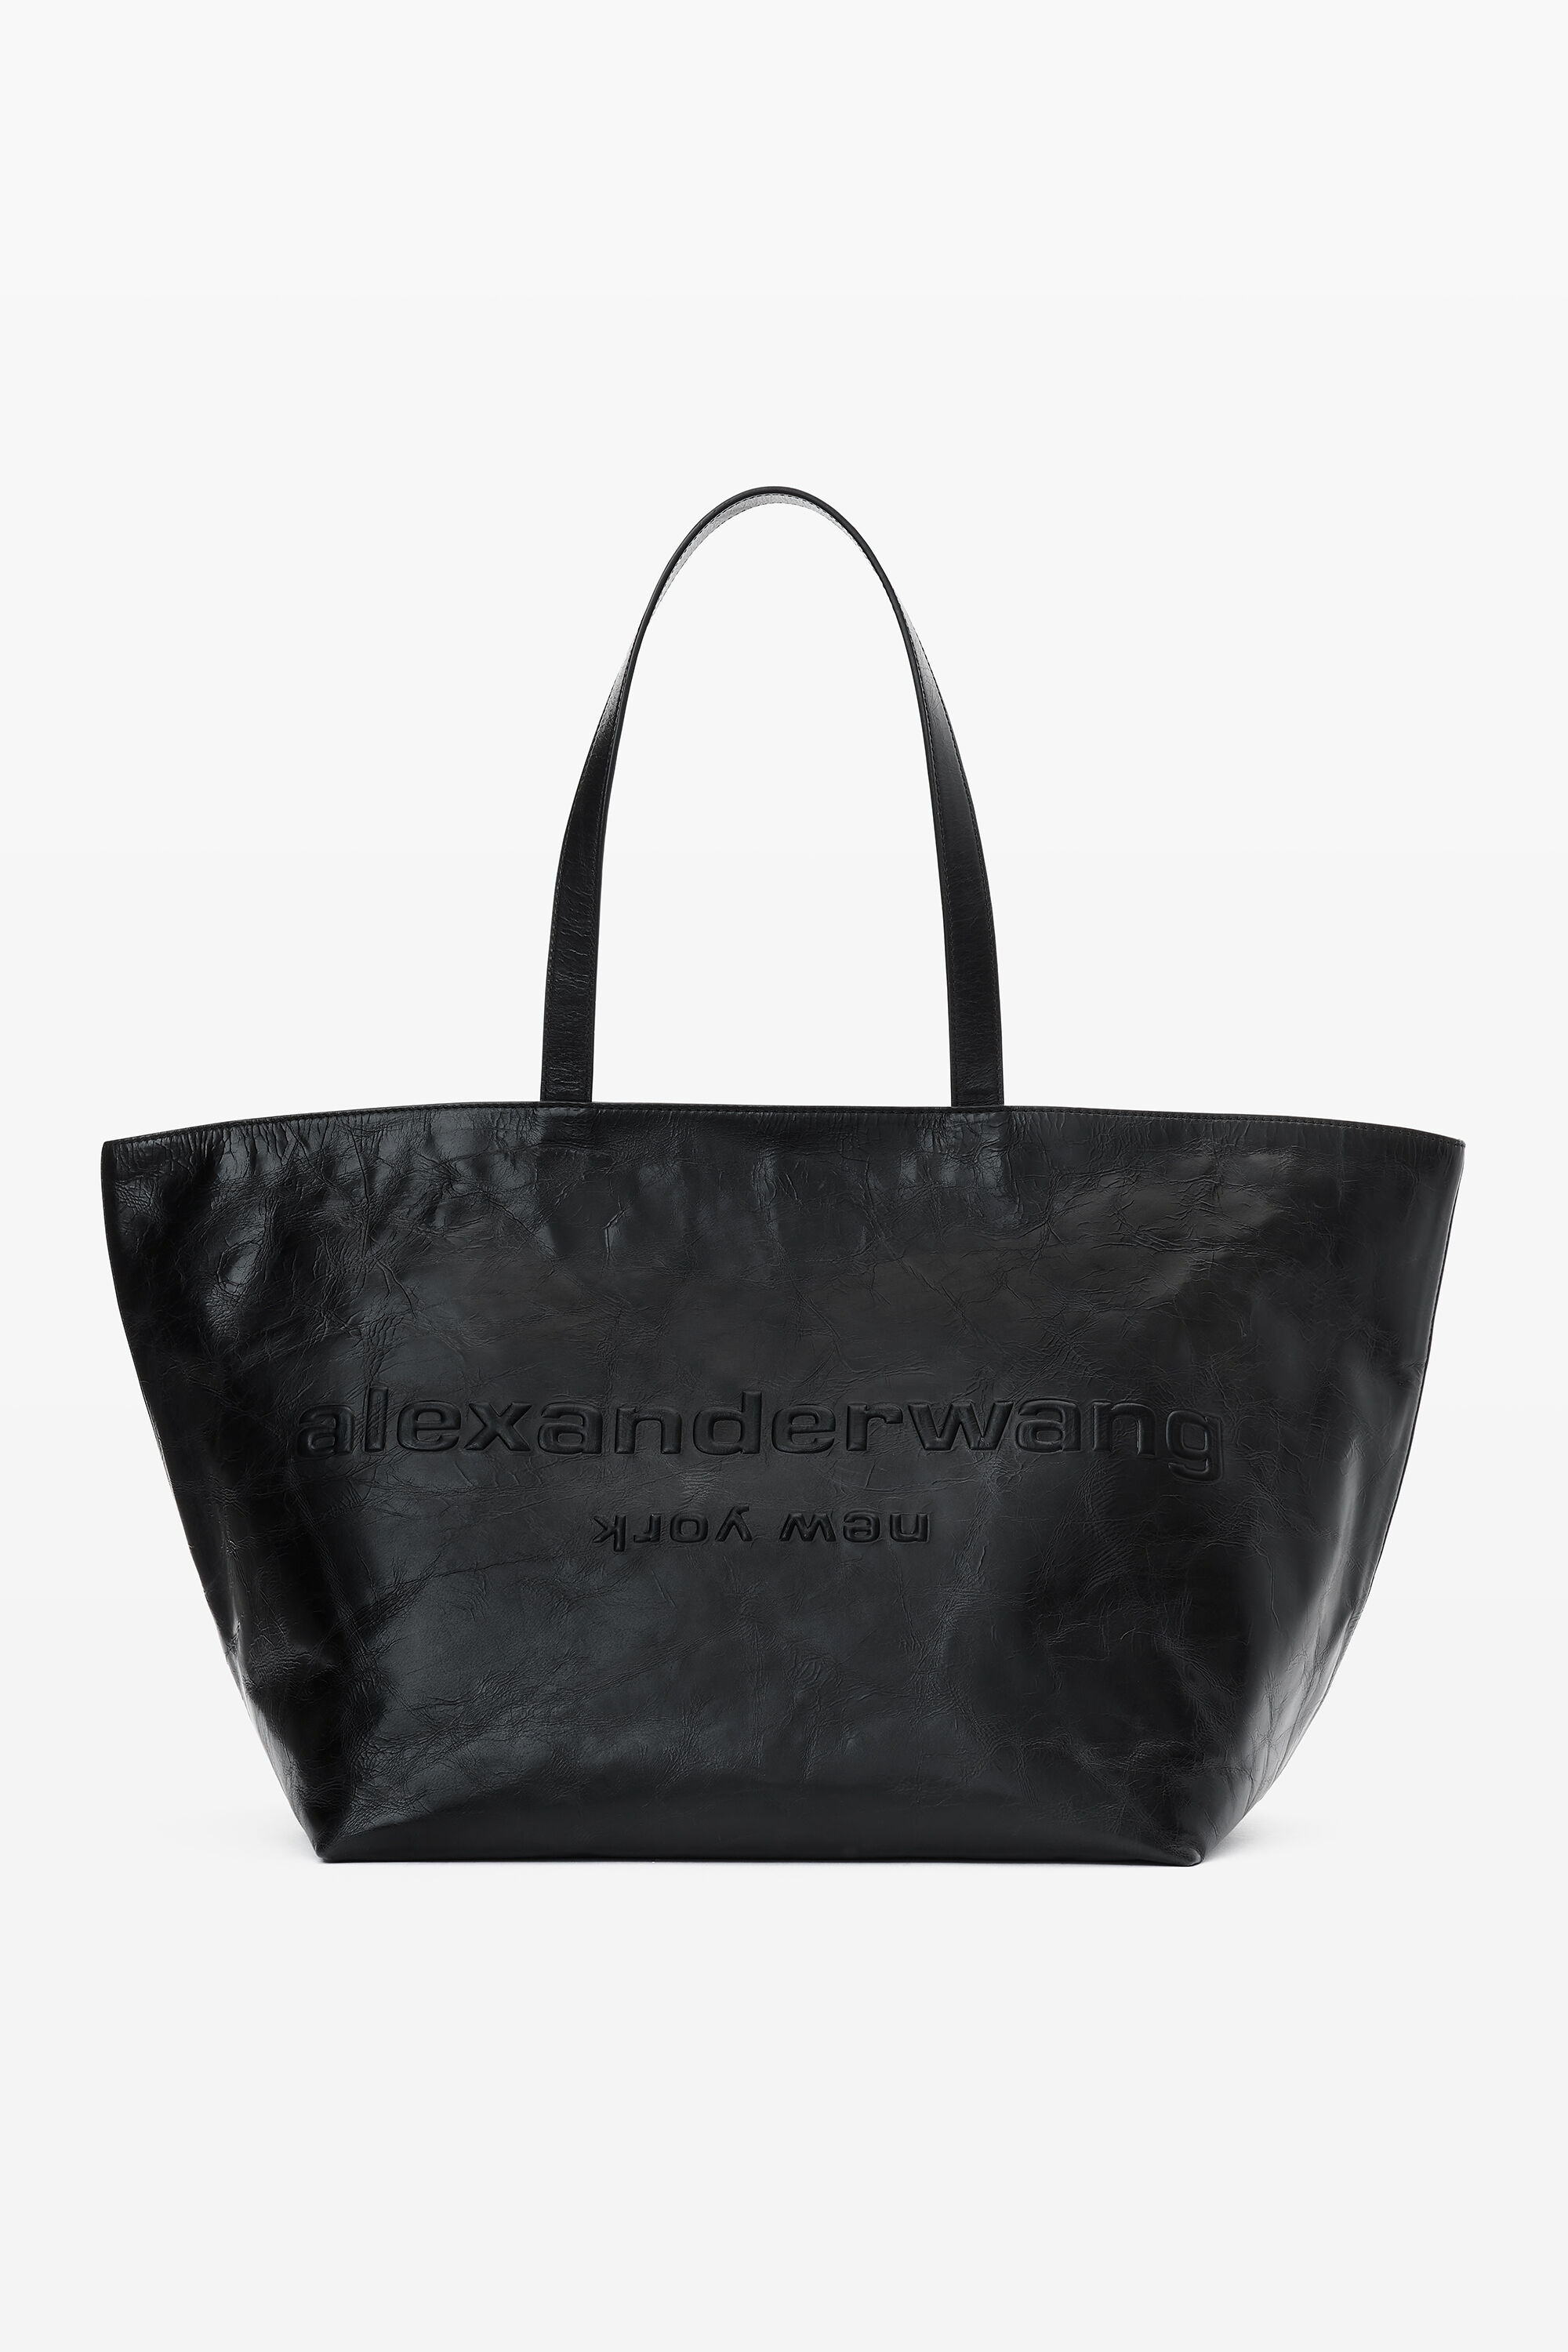 alexanderwang Punch Leather Tote Bag BLACK - alexanderwang® HK